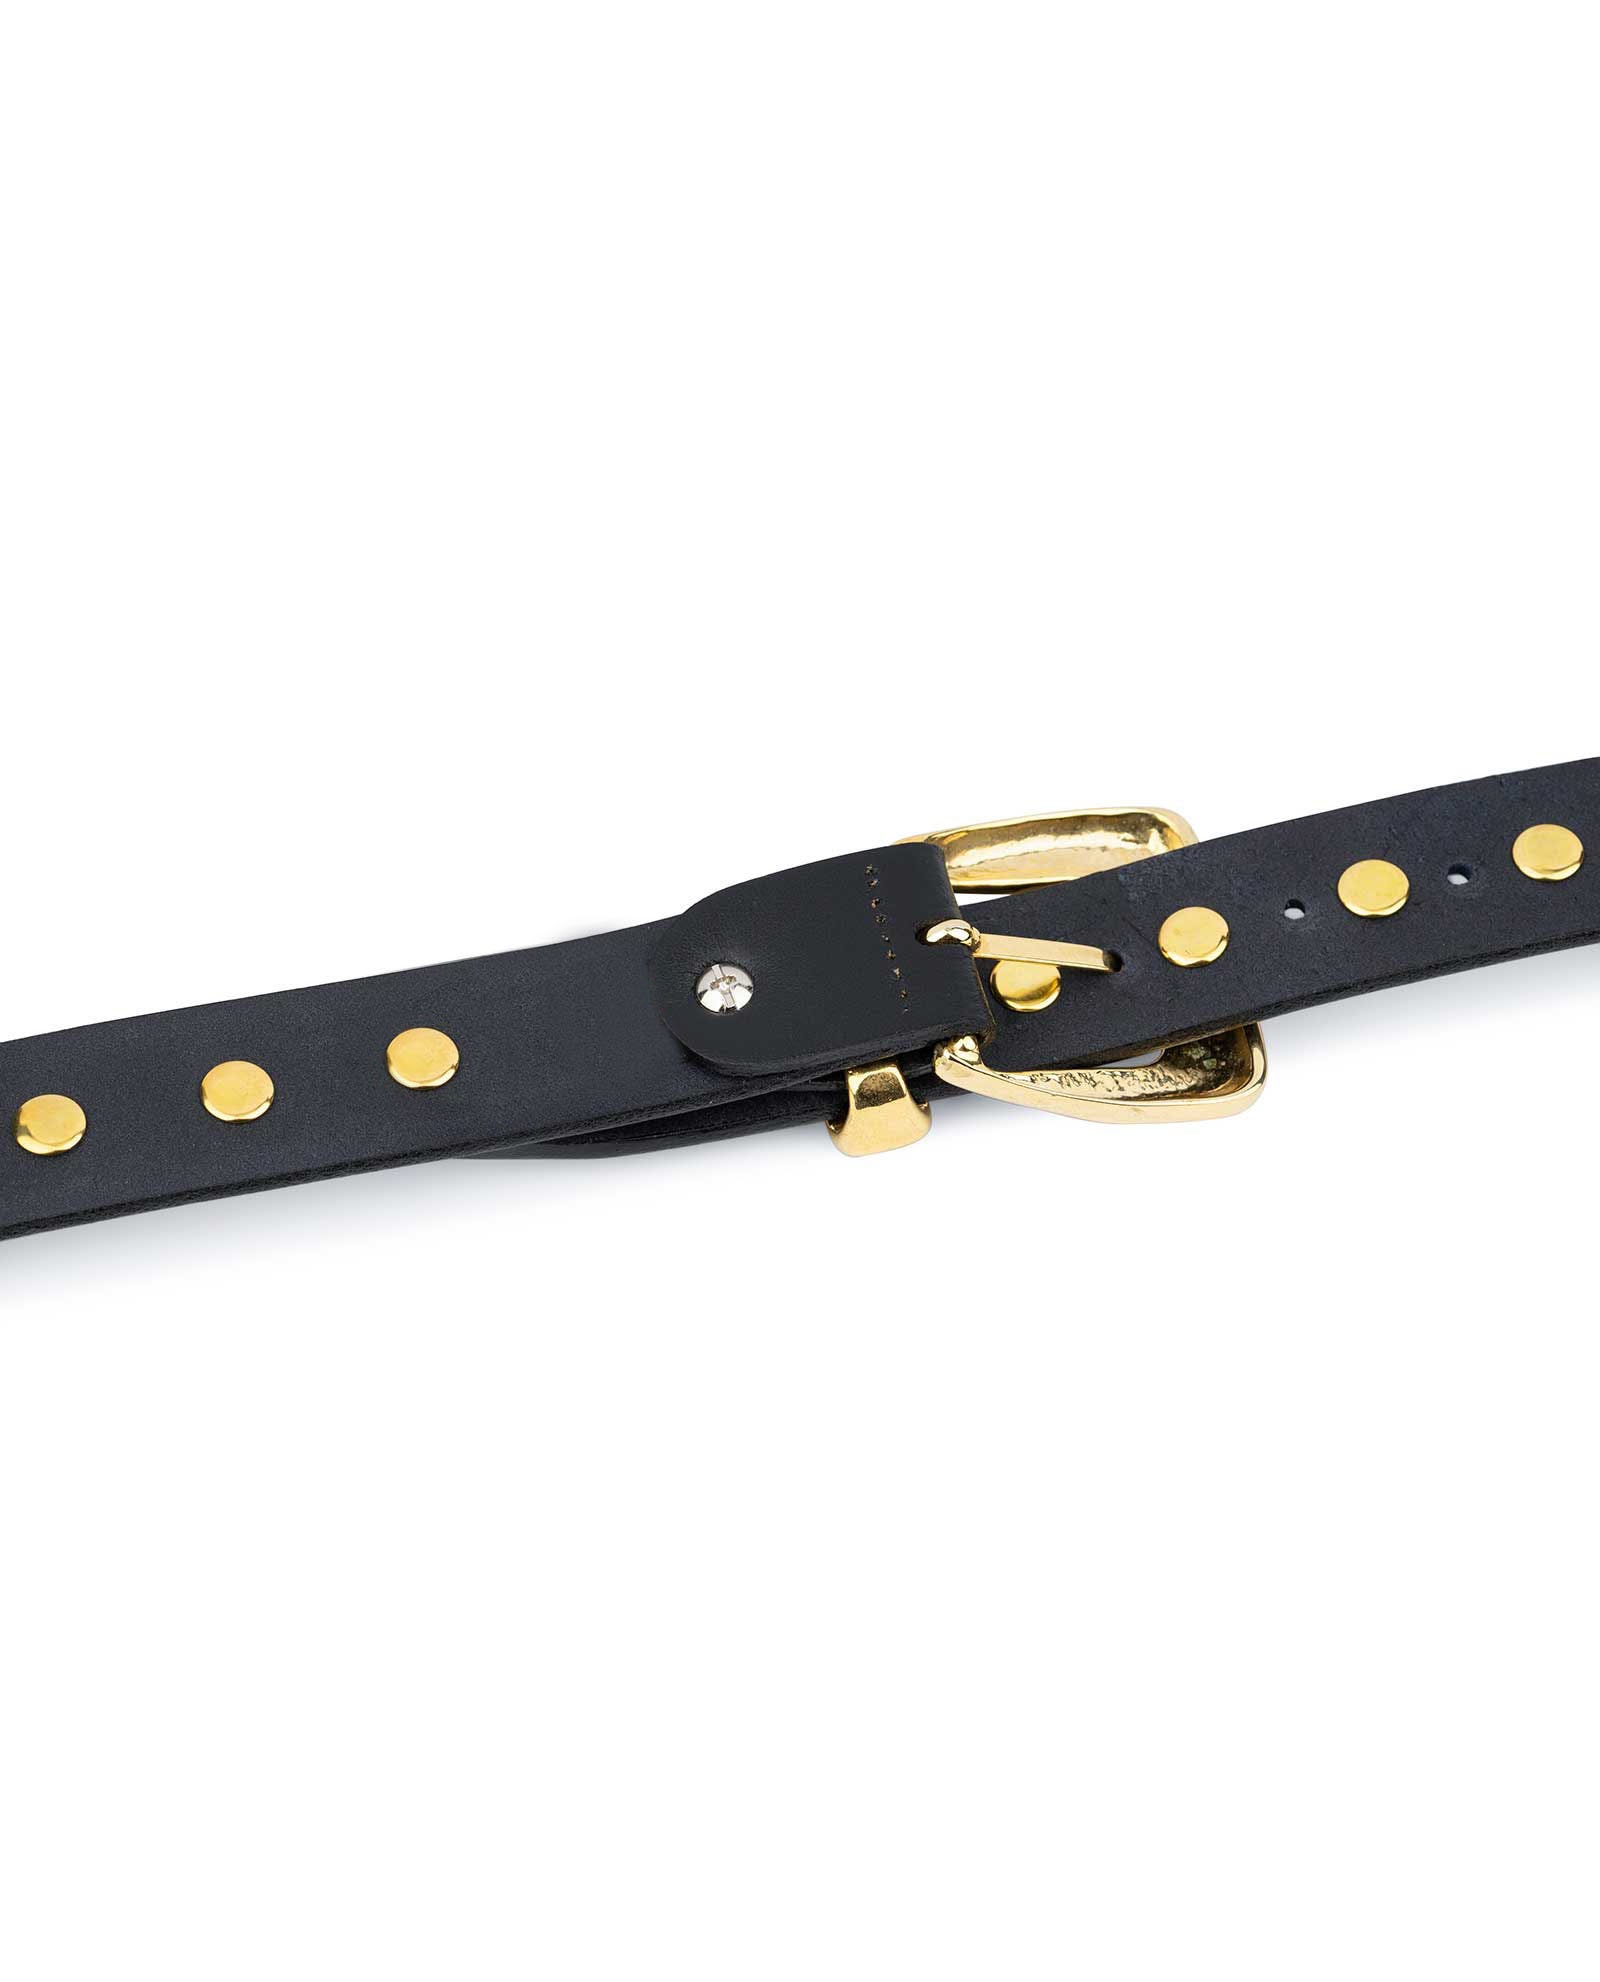 Gold Studded Belt Black Gold Studded Belt Studded Leather - Etsy UK